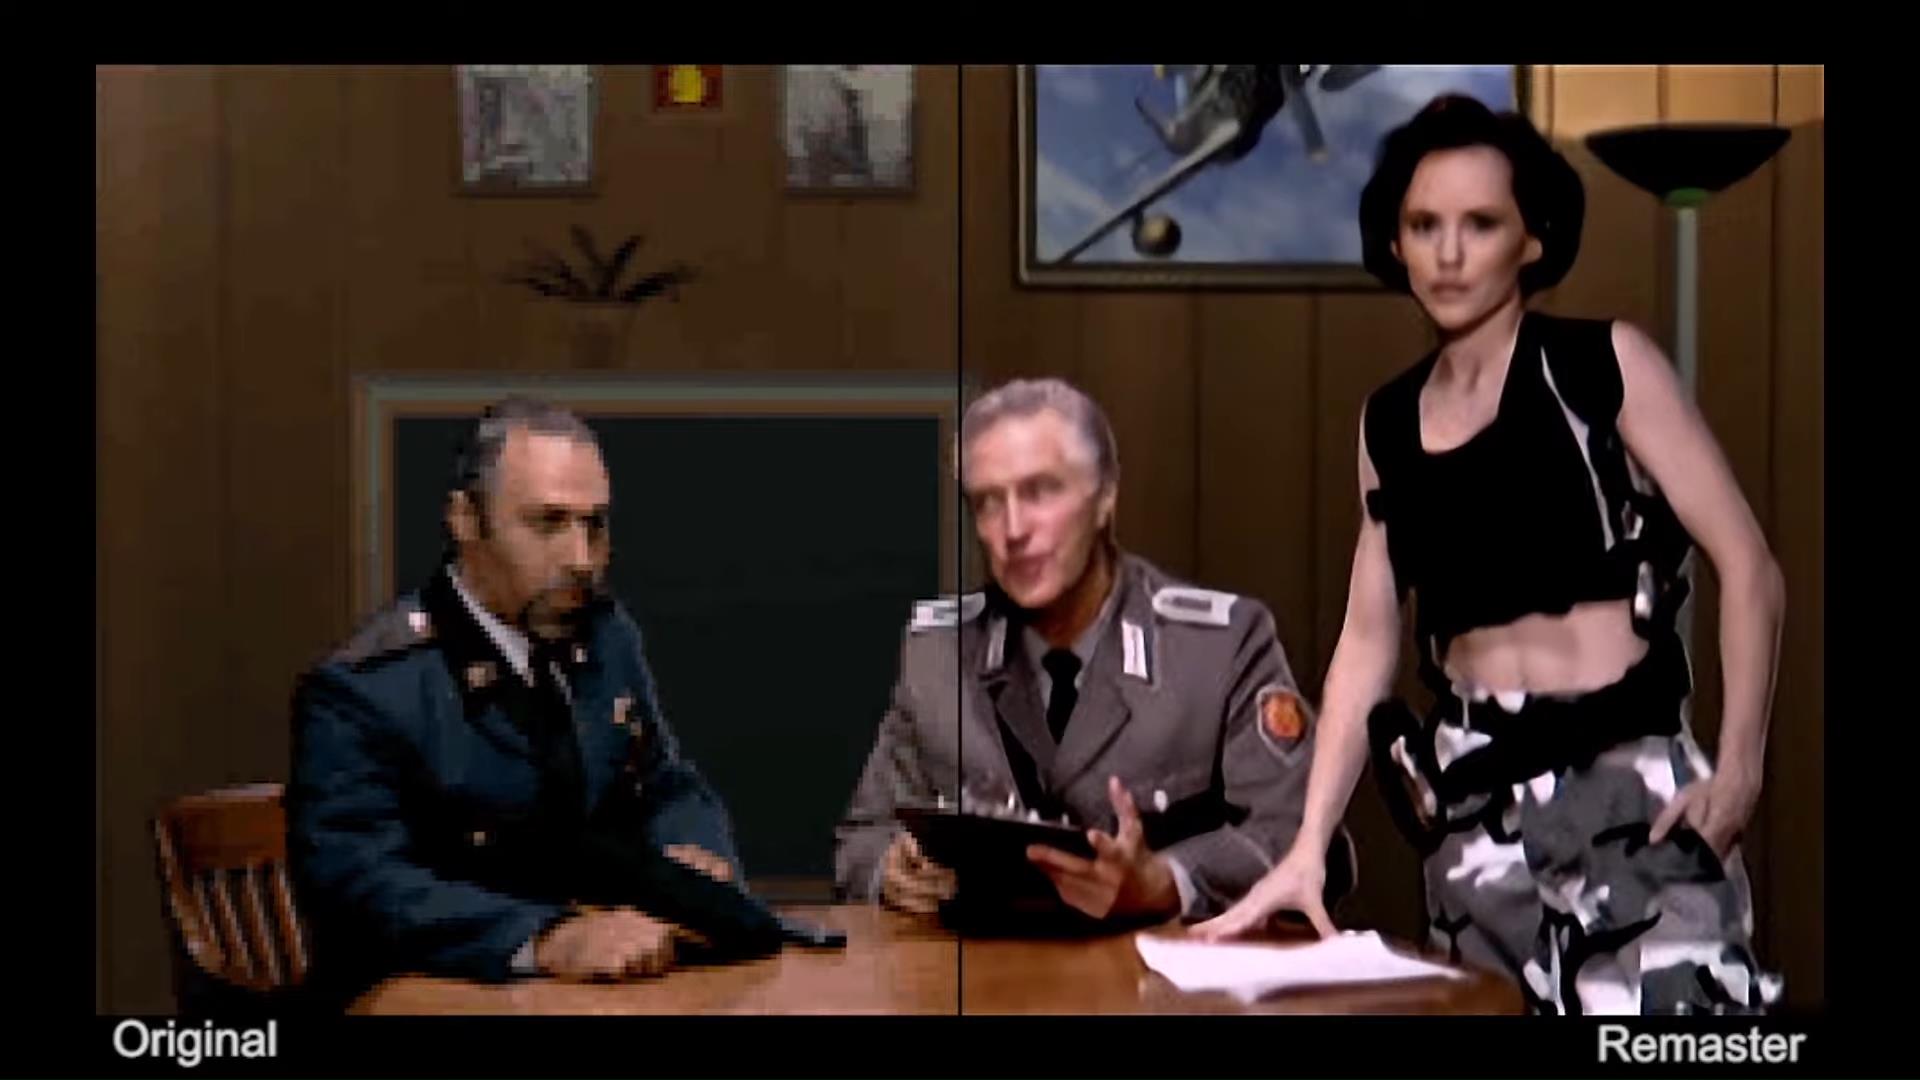 Image for Command & Conquer Remastered will AI-upscale original FMV cutscenes